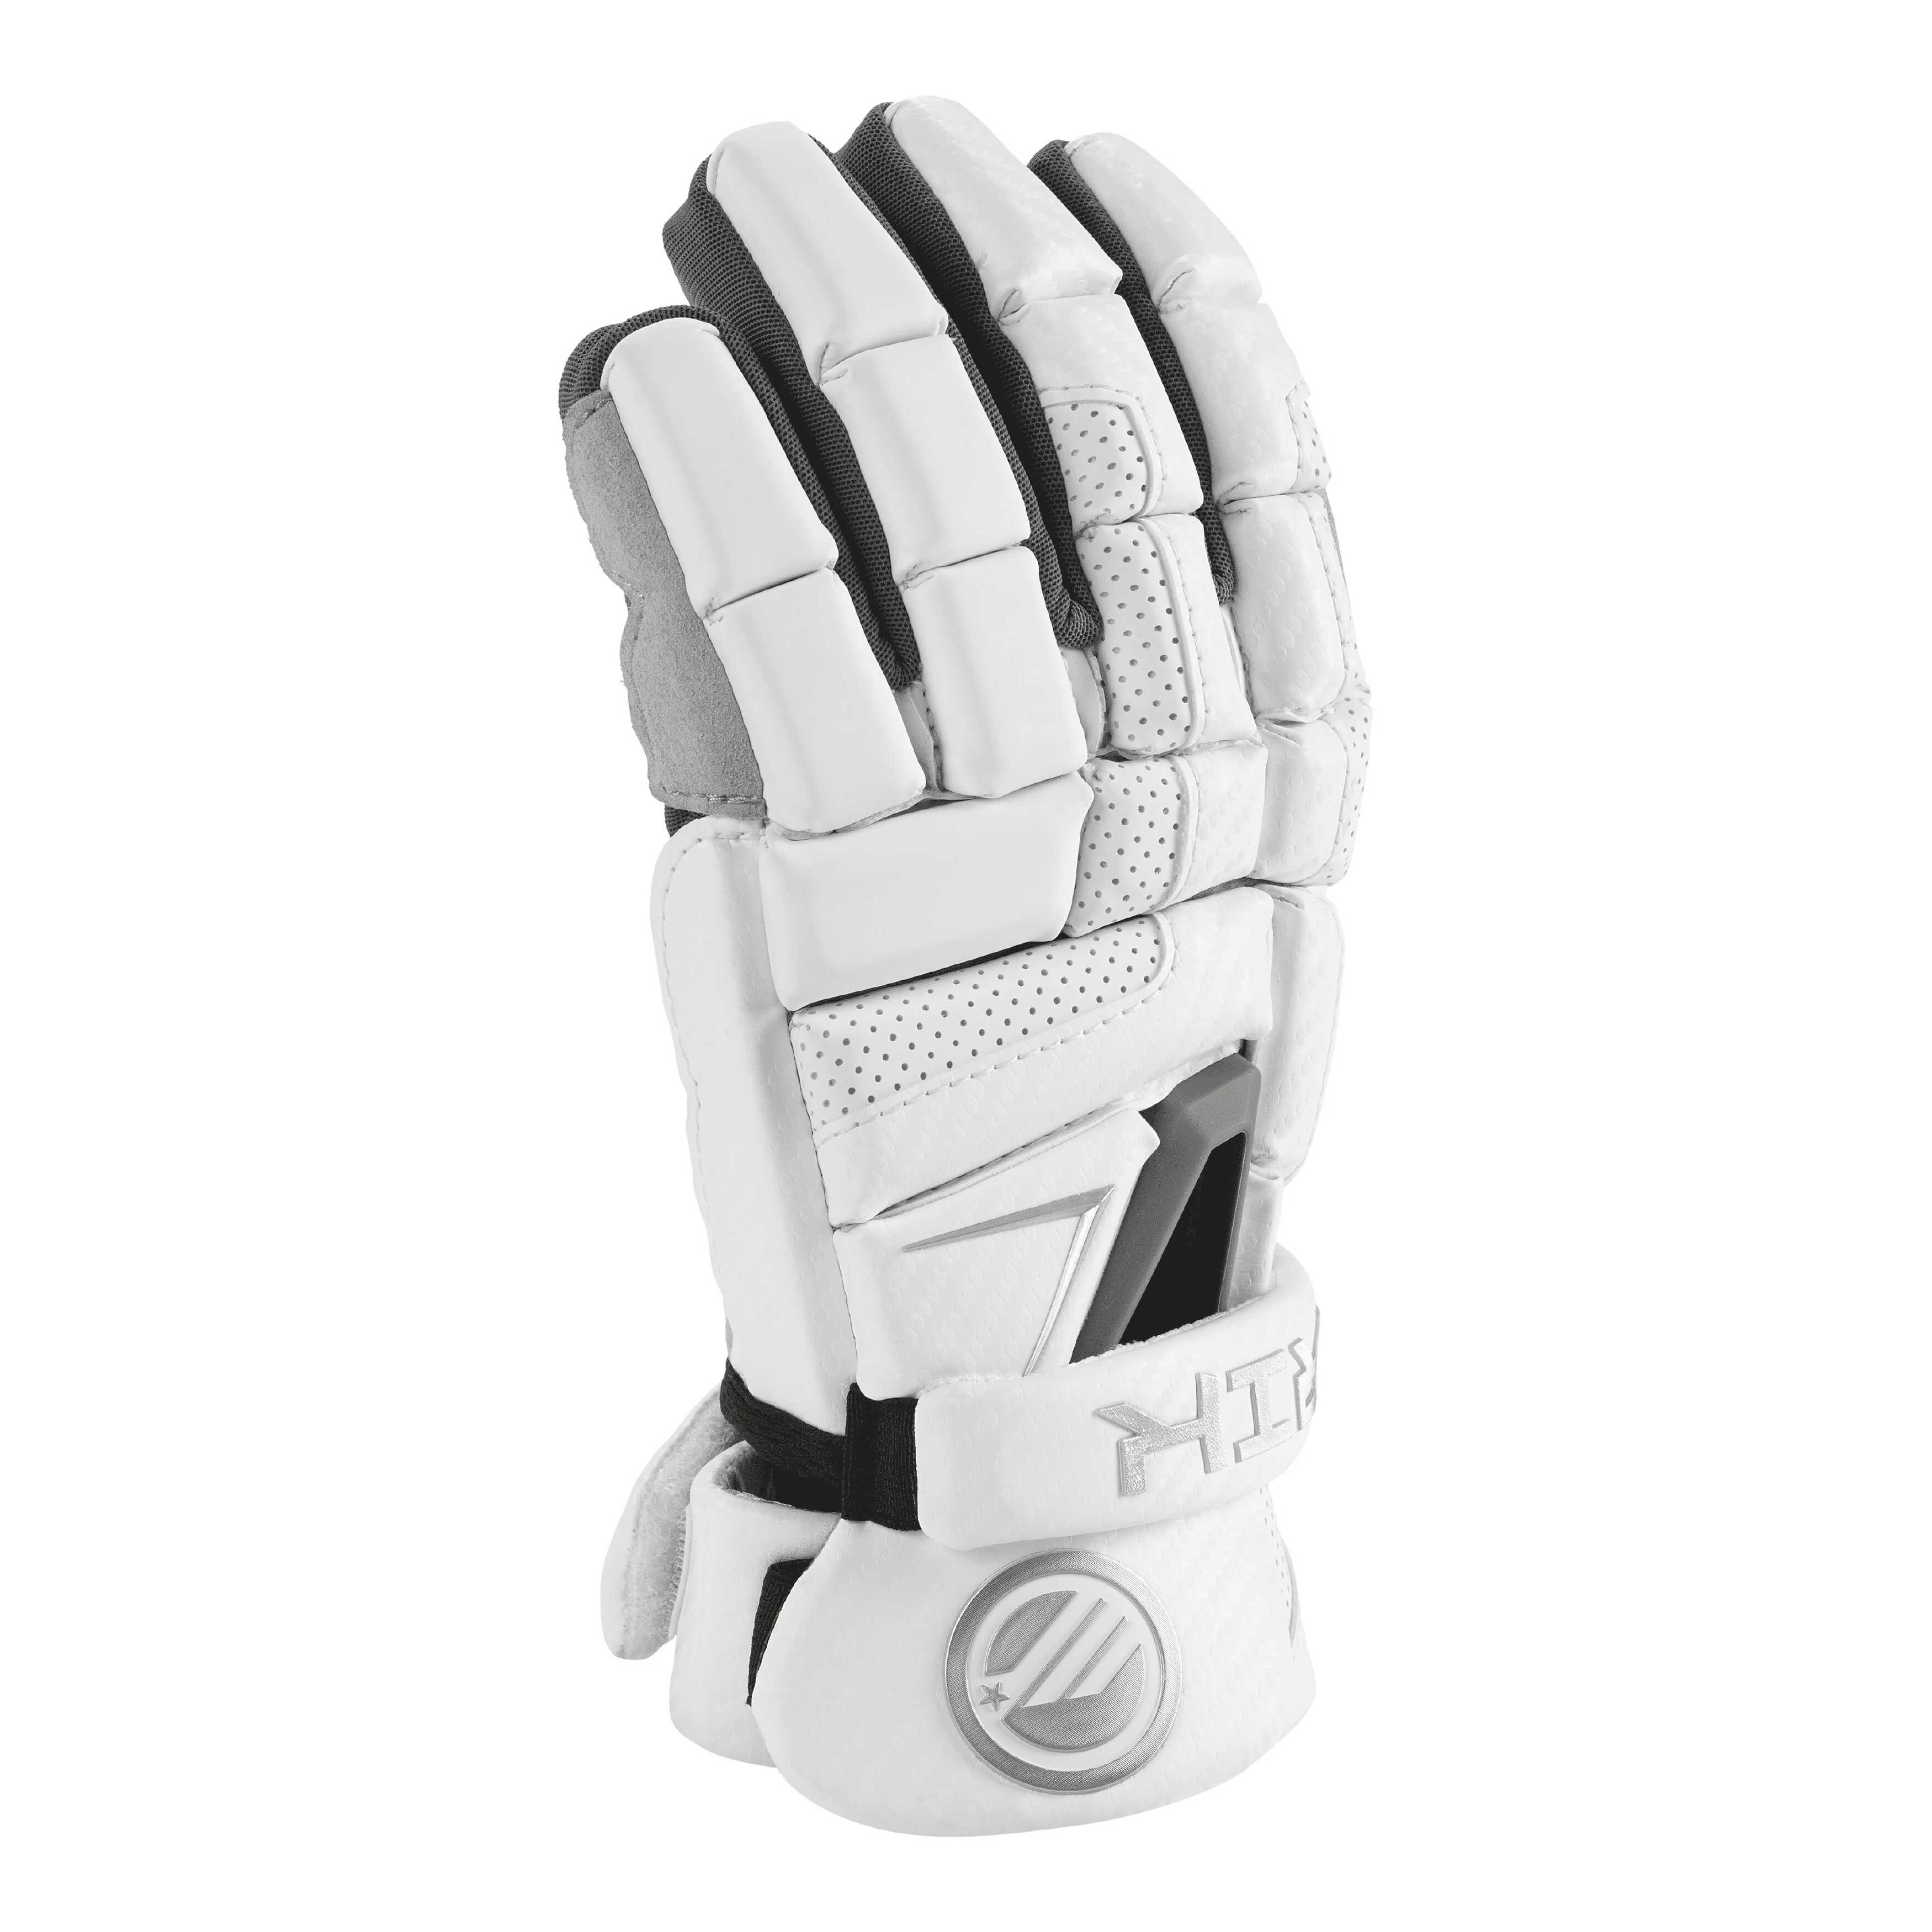 6-best-lacrosse-glove